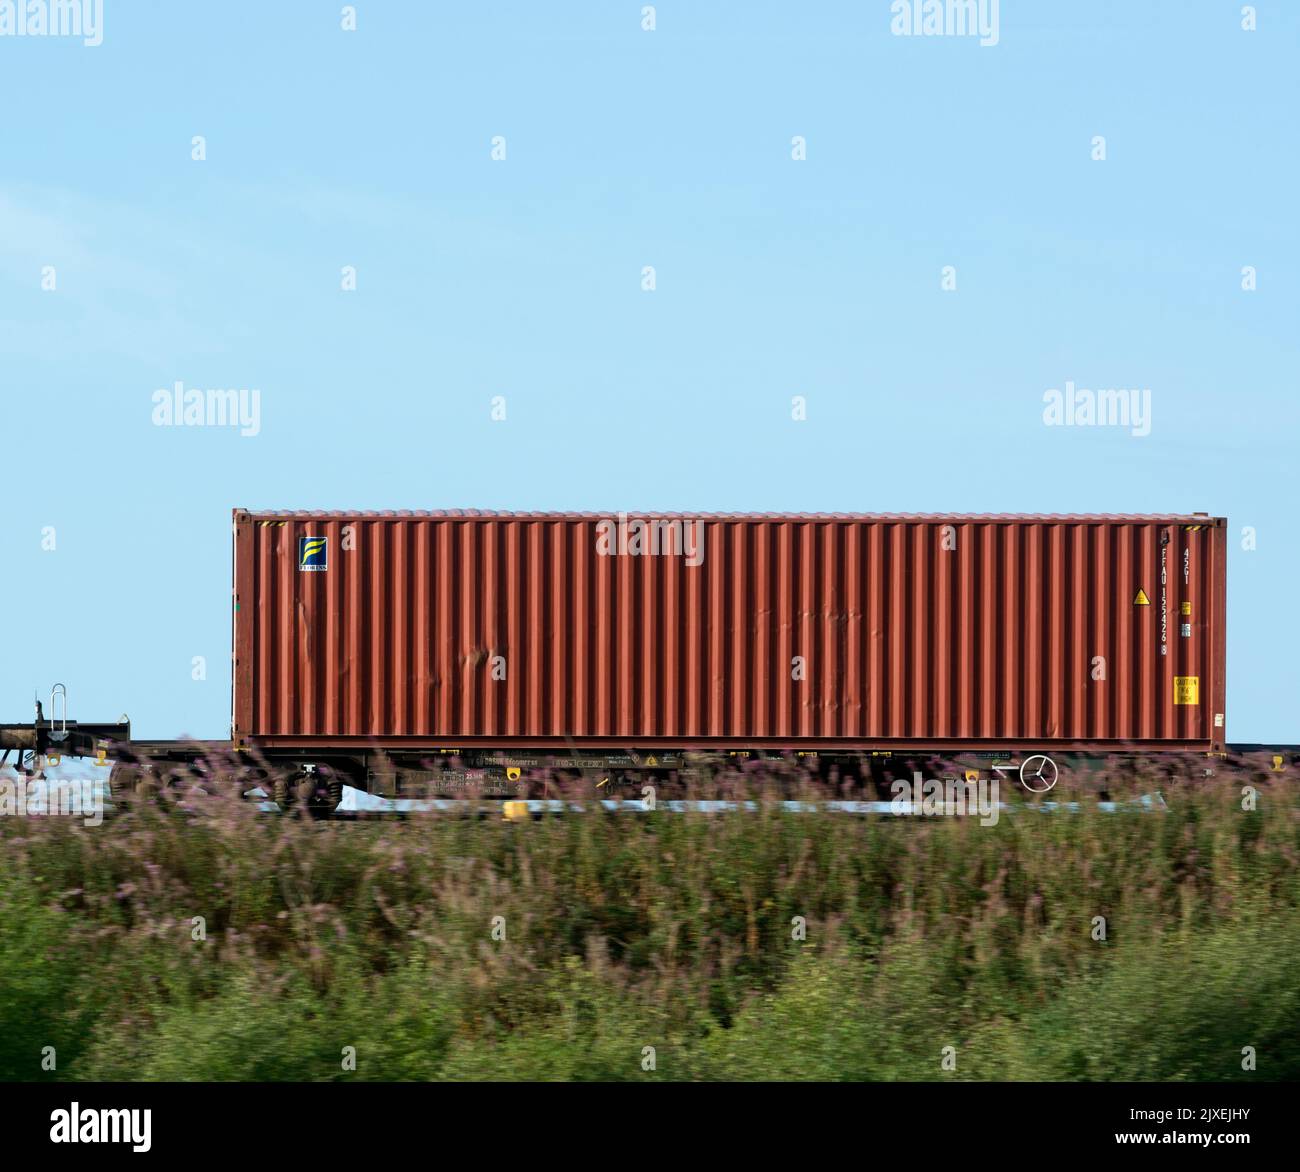 Contenedor de envío Florens en un tren freightliner, Warwickshire, Reino Unido Foto de stock